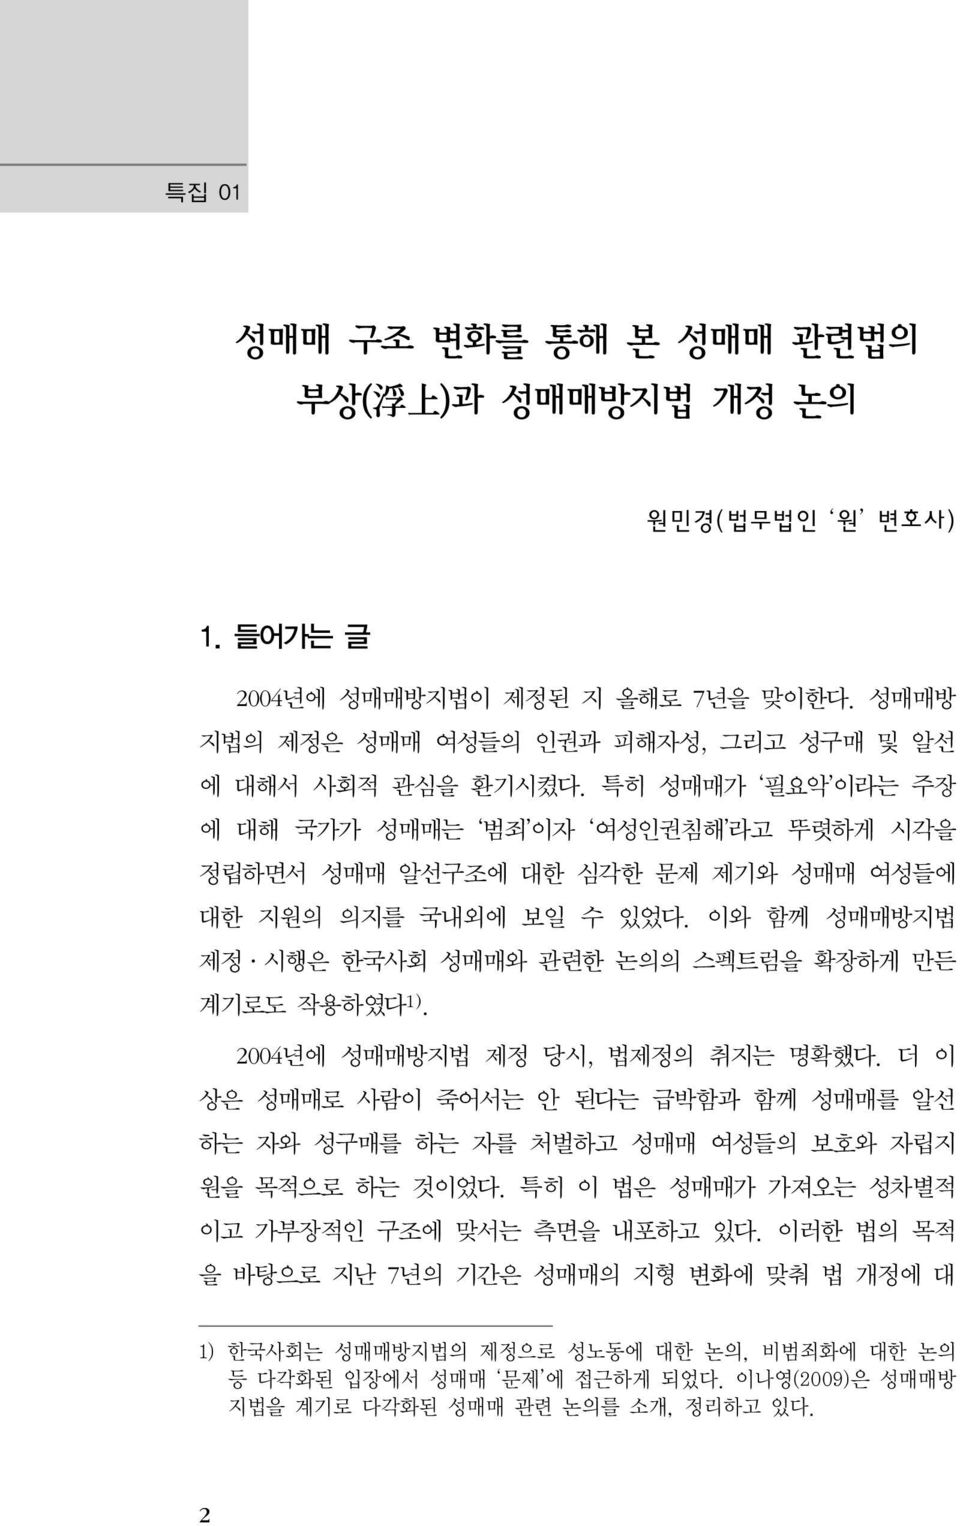 이와 함께 성매매방지법 제정 시행은 한국사회 성매매와 관련한 논의의 스펙트럼을 확장하게 만든 계기로도 작용하였다 1). 2004년에 성매매방지법 제정 당시, 법제정의 취지는 명확했다.